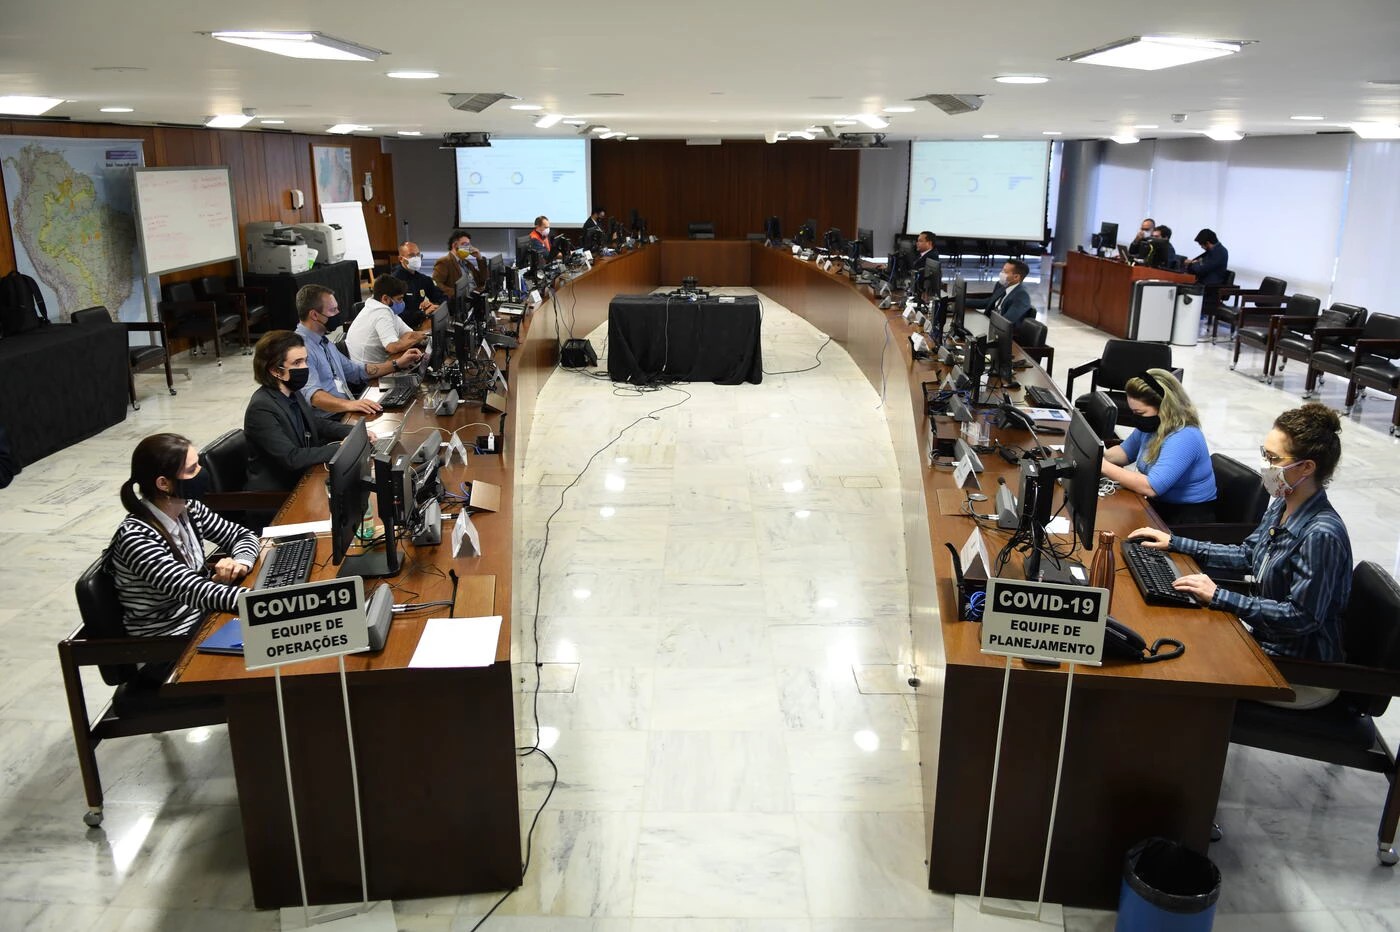 Equipe de planejamento do governo federal no combate ao coronavírus está sentada em duas fileiras de mesas paralelas, trabalhando no computador